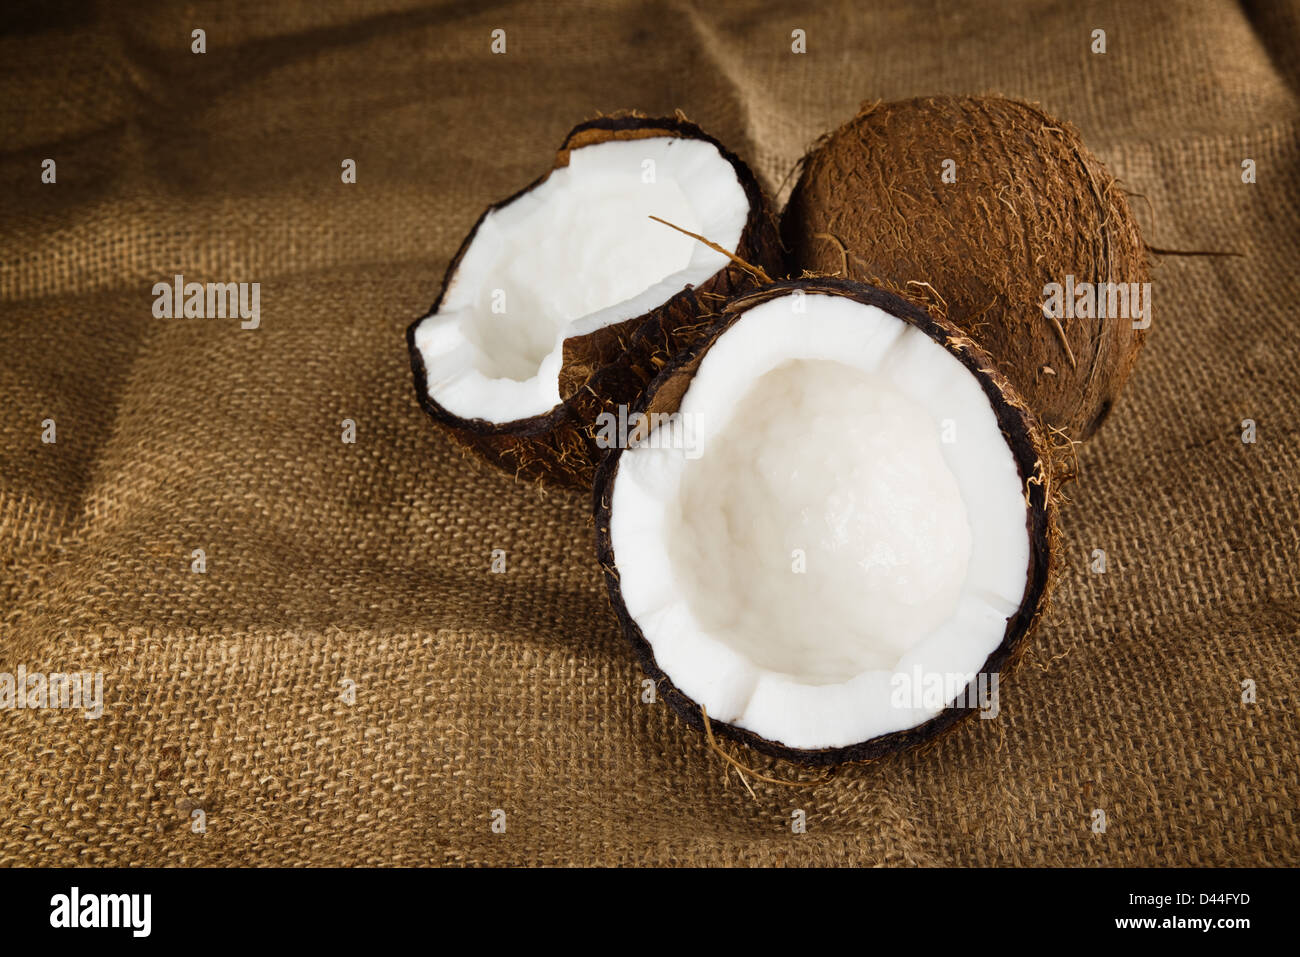 Zwei Kokosnüsse auf einem Tuch Hintergrund. Kokosnuss ist leckere tropische Früchte. Stockfoto